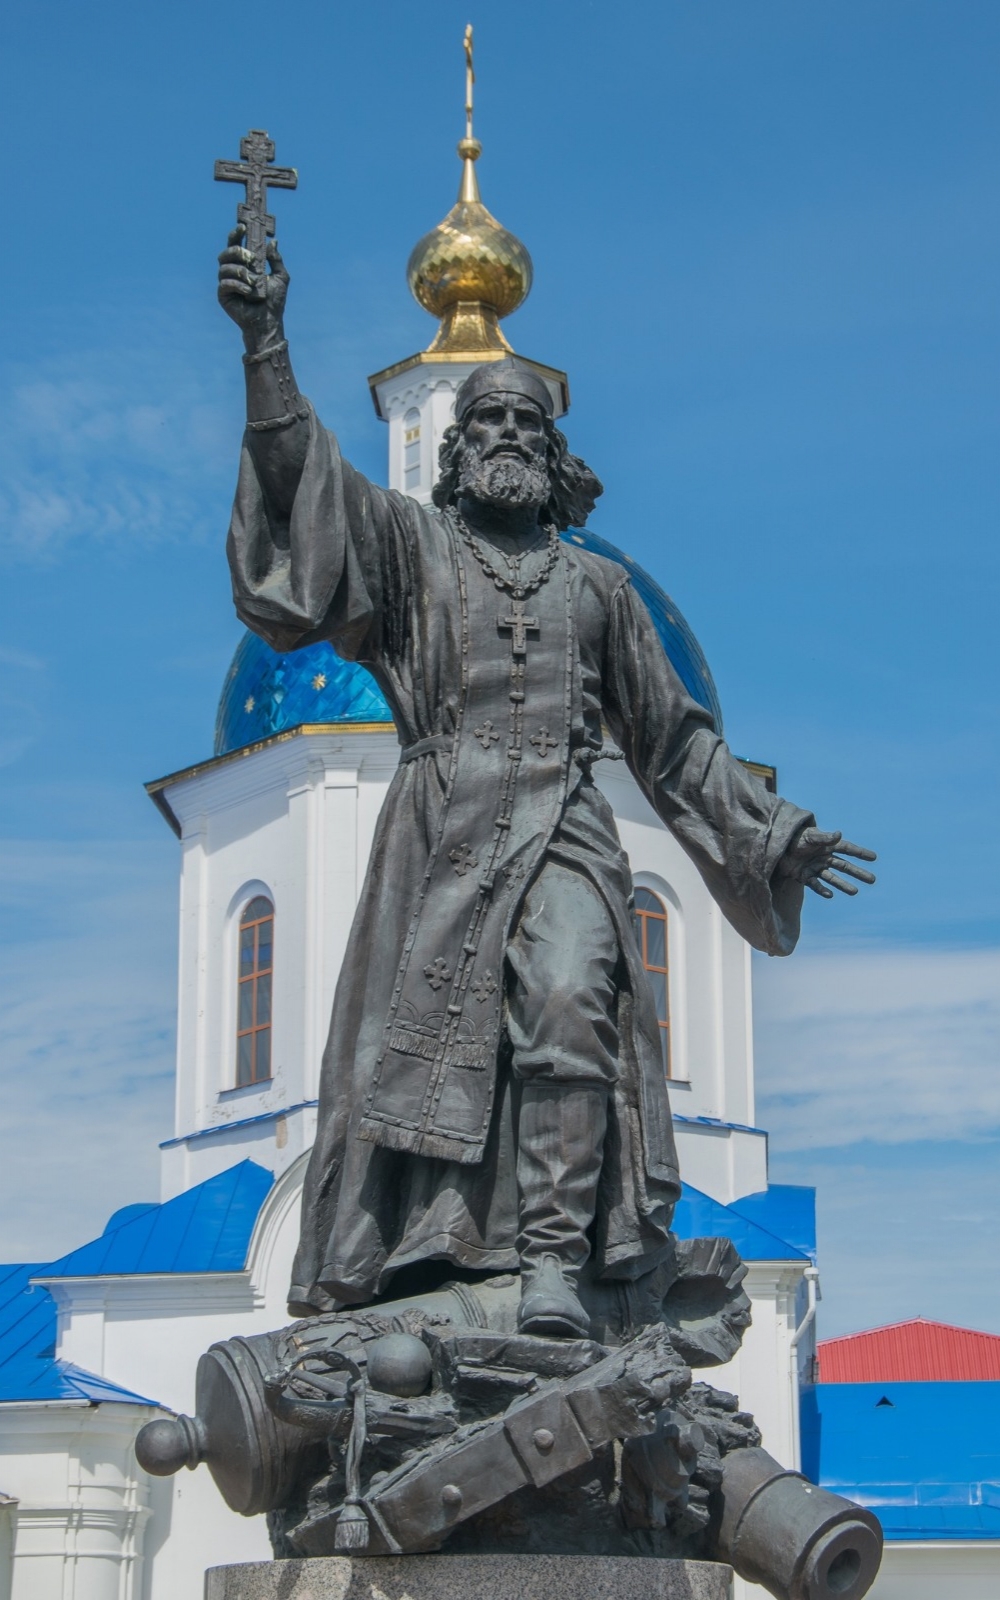 Памятник полковому священнику 19-го Егерского полка Василию Васильковскому, которого почитали как настоящего героя России. 